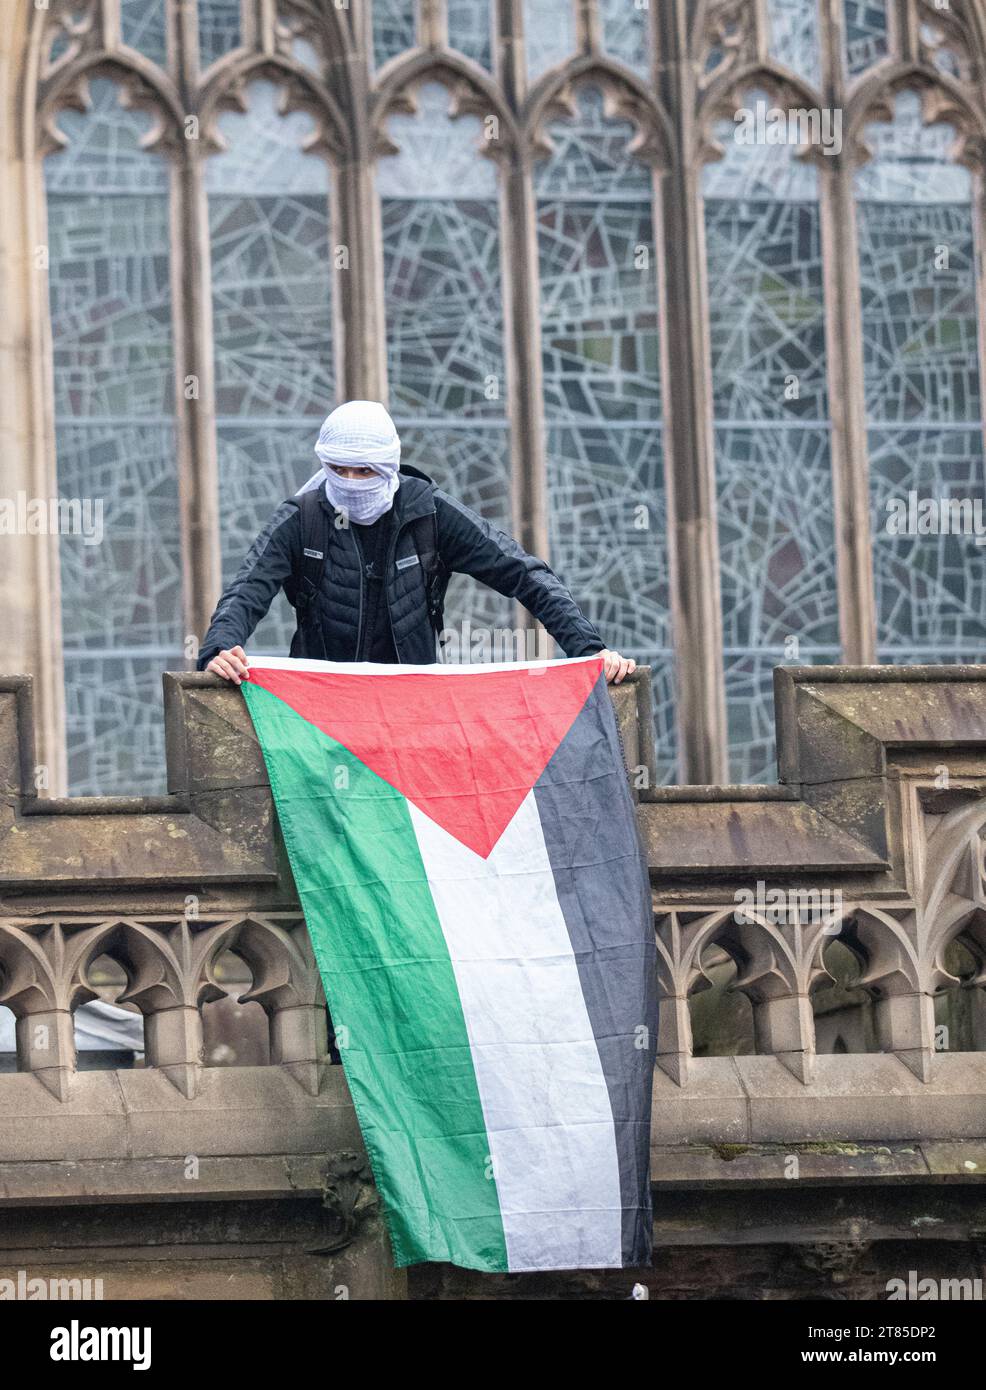 Drapeaux palestiniens brandis depuis la balustrade de la cathédrale lors d'une manifestation palestinienne dans le centre de Manchester. ROYAUME-UNI. Plus d'un millier de manifestants se sont rassemblés à Whitworth Park pour réclamer un cessez-le-feu. Ils ont ensuite marché devant l'université de Manchester le long d'Oxford Rd jusqu'au centre-ville. La police gardait des points de vente qui, selon les manifestants, avaient des liens avec Israël, y compris McDonalds et Fisher Geram. La marche s'est terminée à la cathédrale de Manchester où certains manifestants ont monté la balustrade de la cathédrale et brandi des drapeaux. Manchester UK. Photo : garyroberts/worldwidefeatures.com Banque D'Images